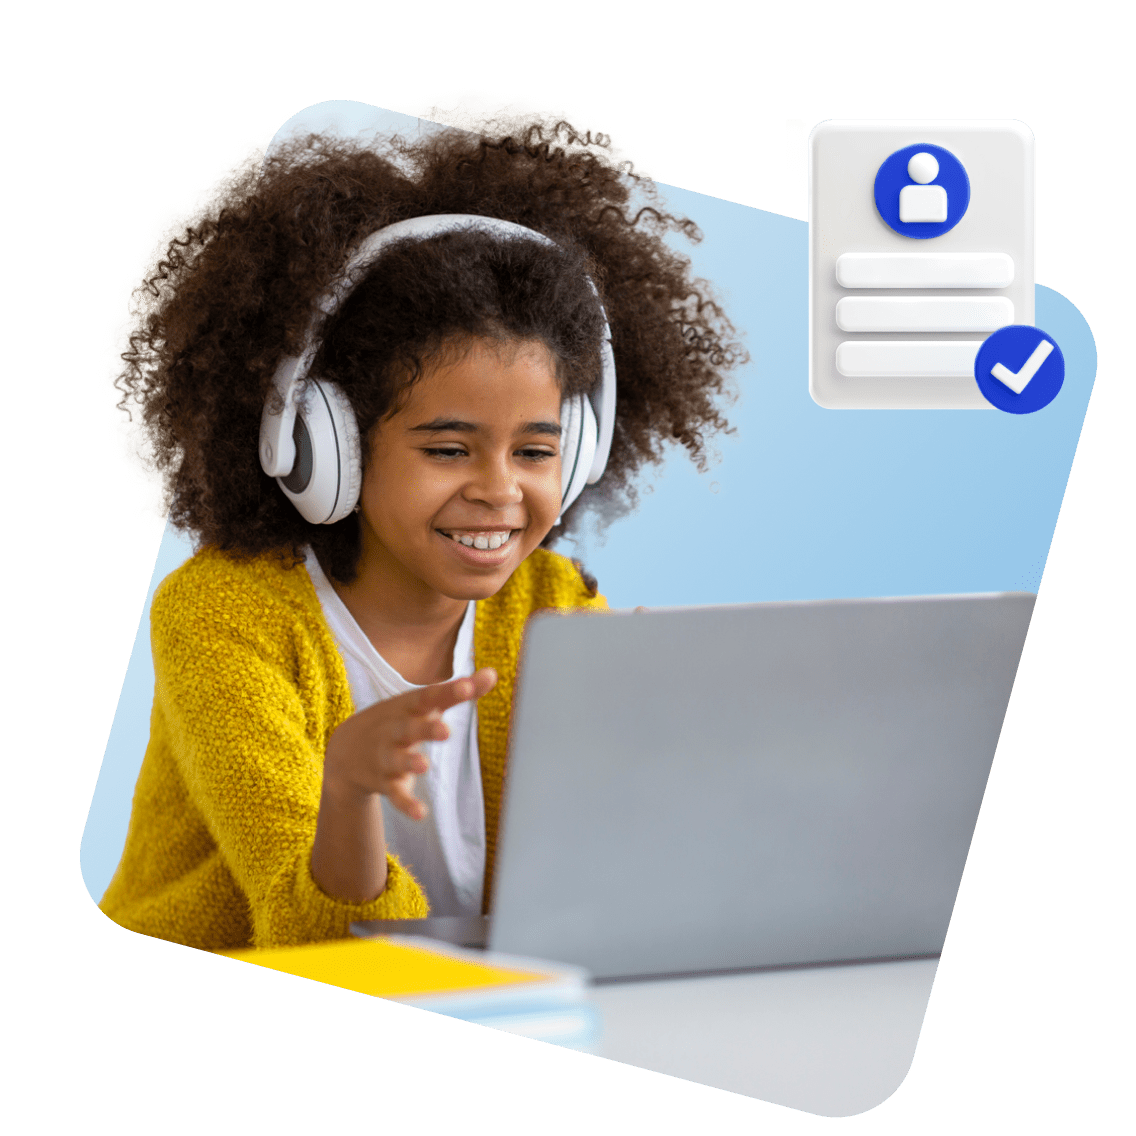 Maine Online Schools image 1 (name 3 Young Girl Laptop Headphones Certificate 1 1)